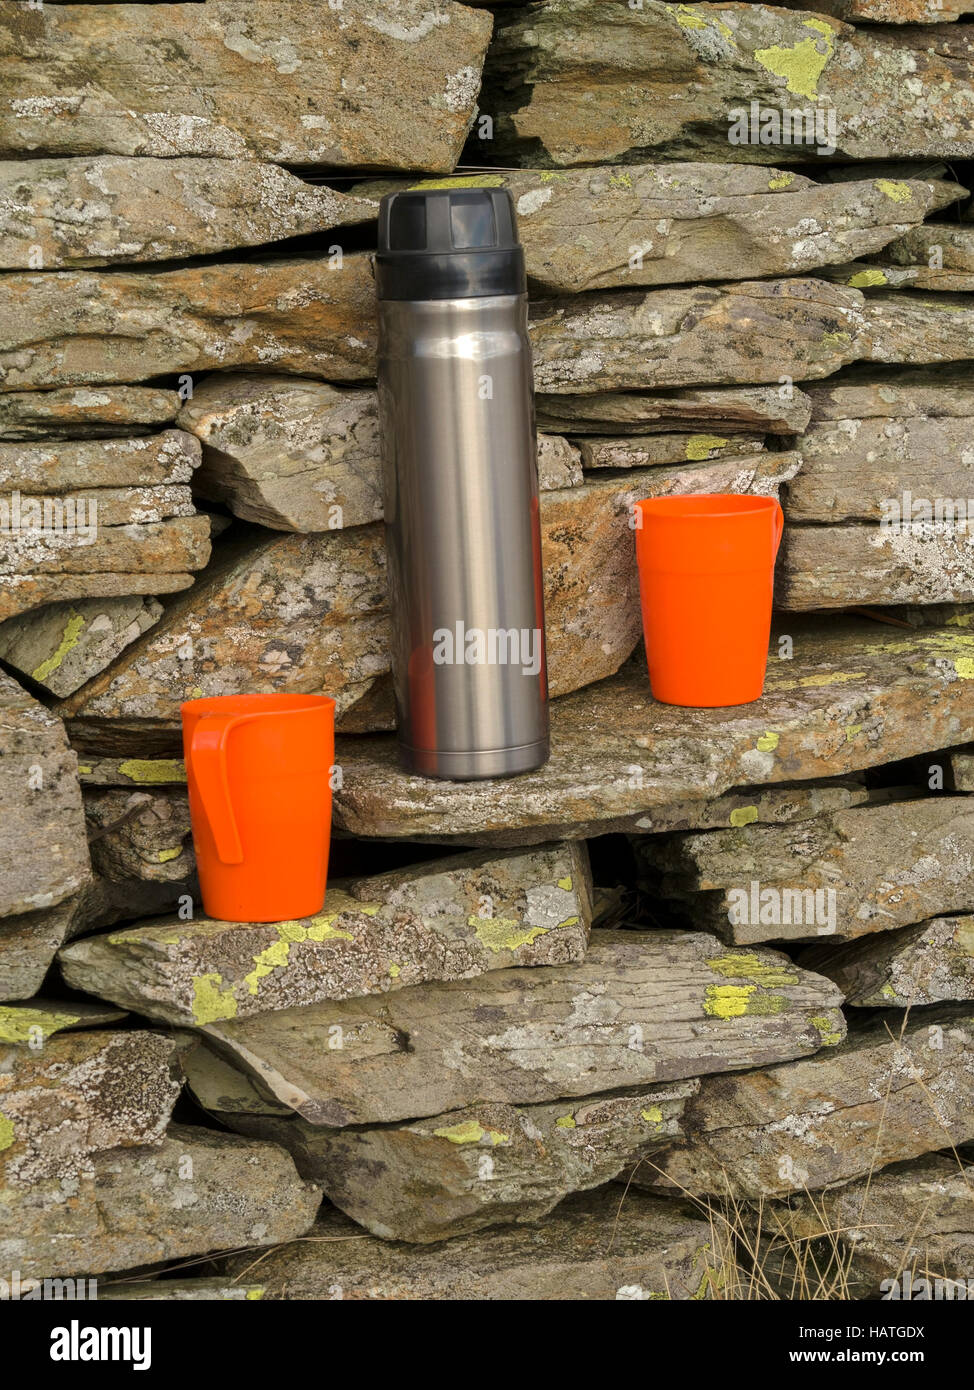 Termo de acero inoxidable y dos tazas de plástico naranja en pared de piedra seca. Foto de stock